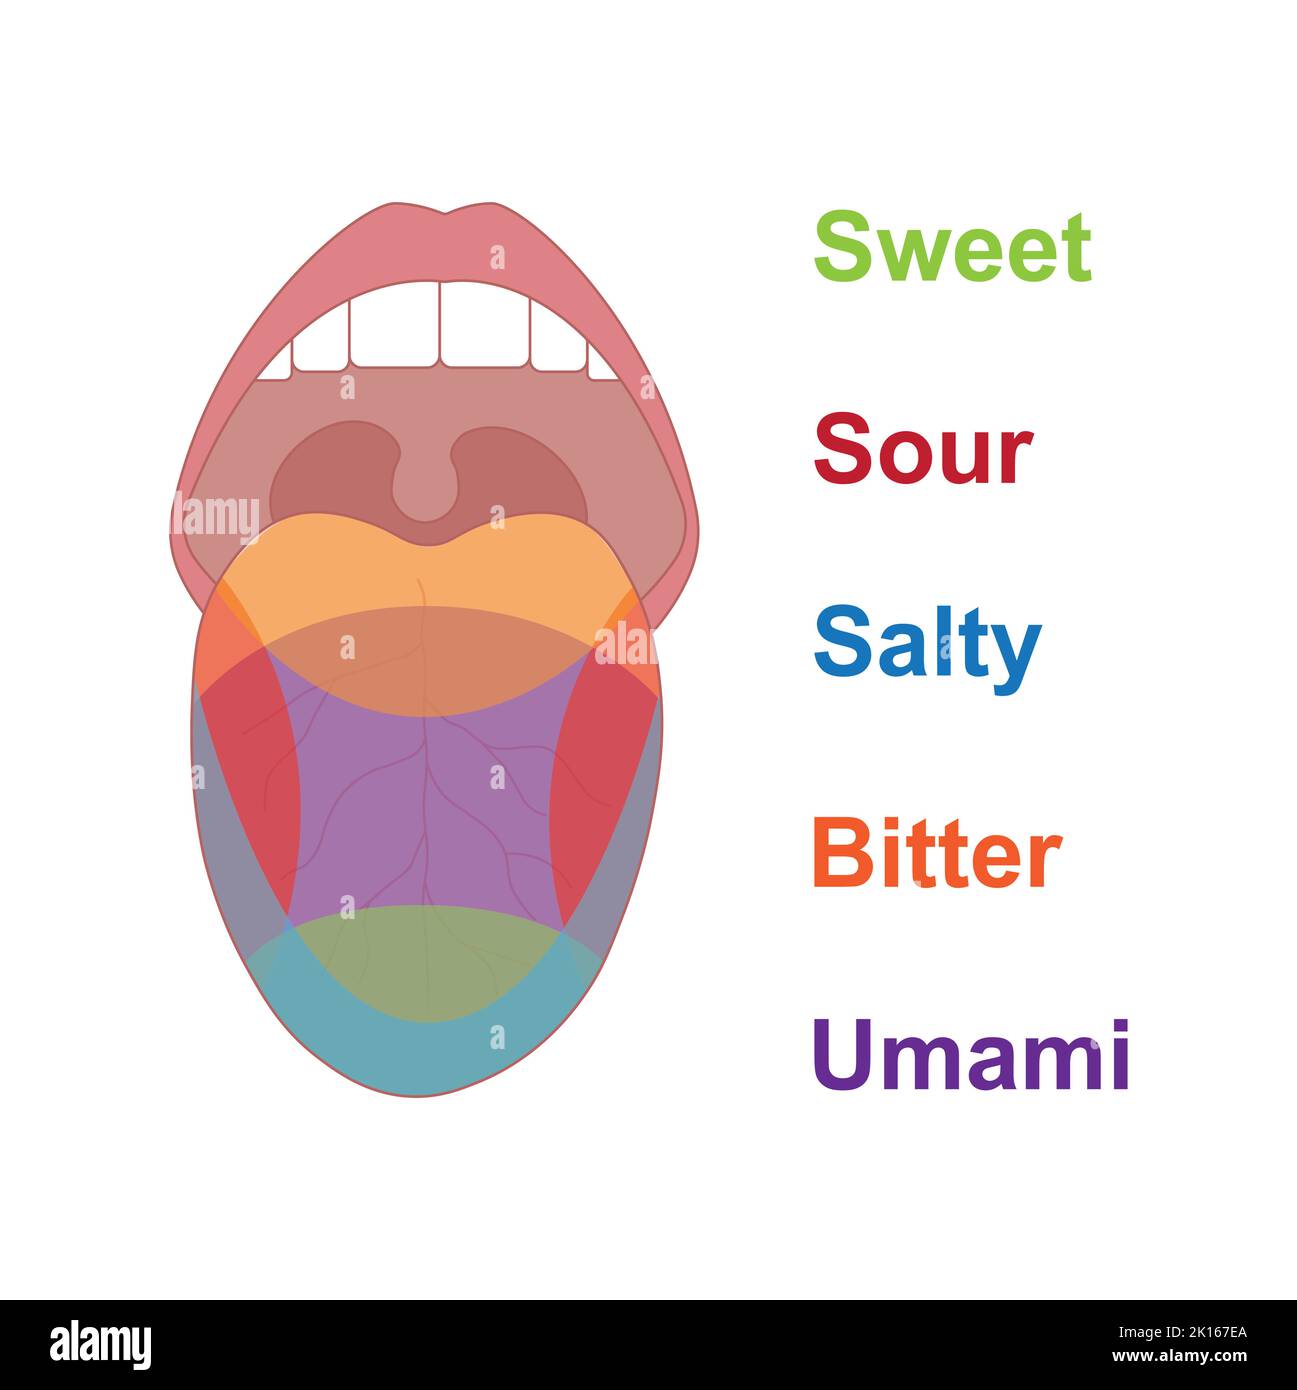 Wissenschaftliche Gestaltung der Geschmacksbereiche der menschlichen Zunge. Süß, sauer, salzig und bitter. Bunte Symbole. Vektorgrafik. Stock Vektor